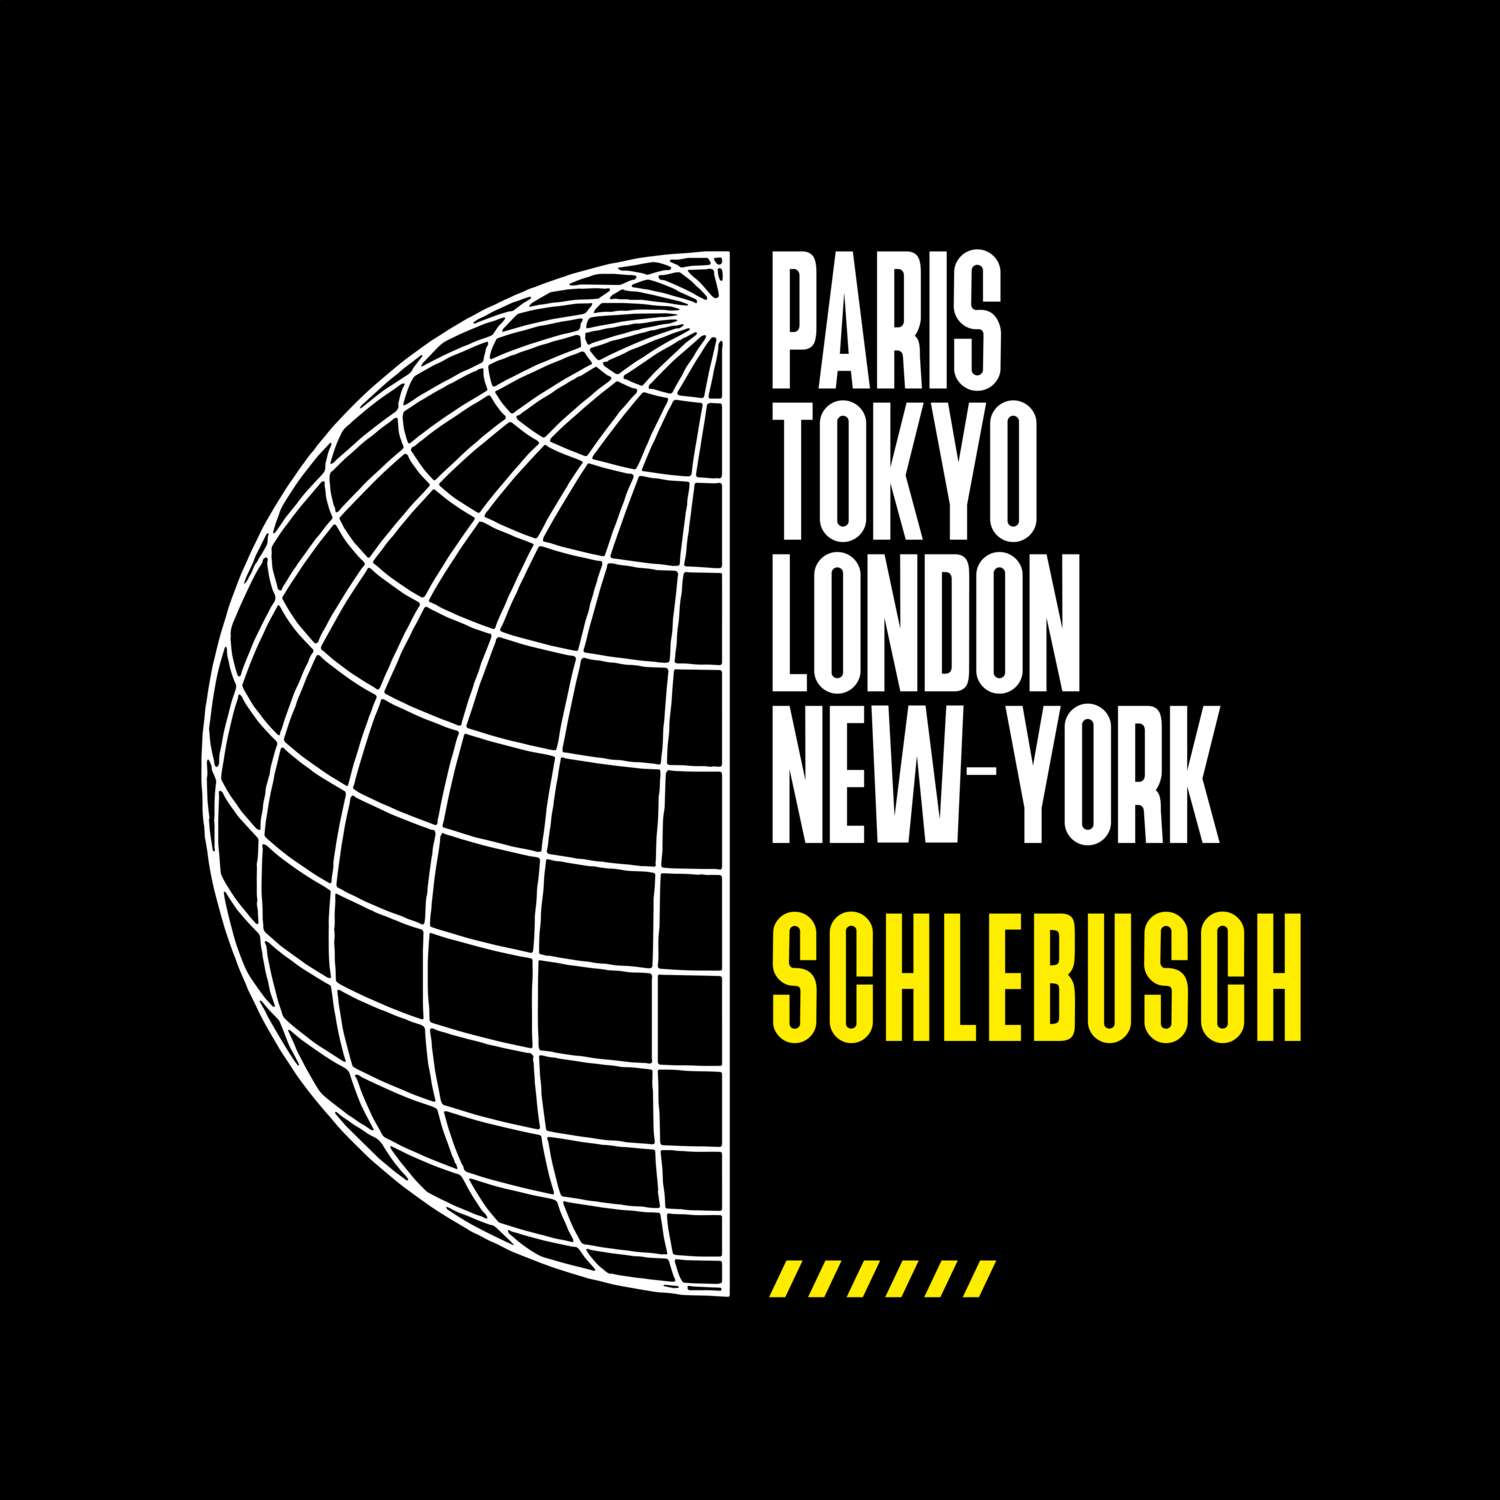 Schlebusch T-Shirt »Paris Tokyo London«